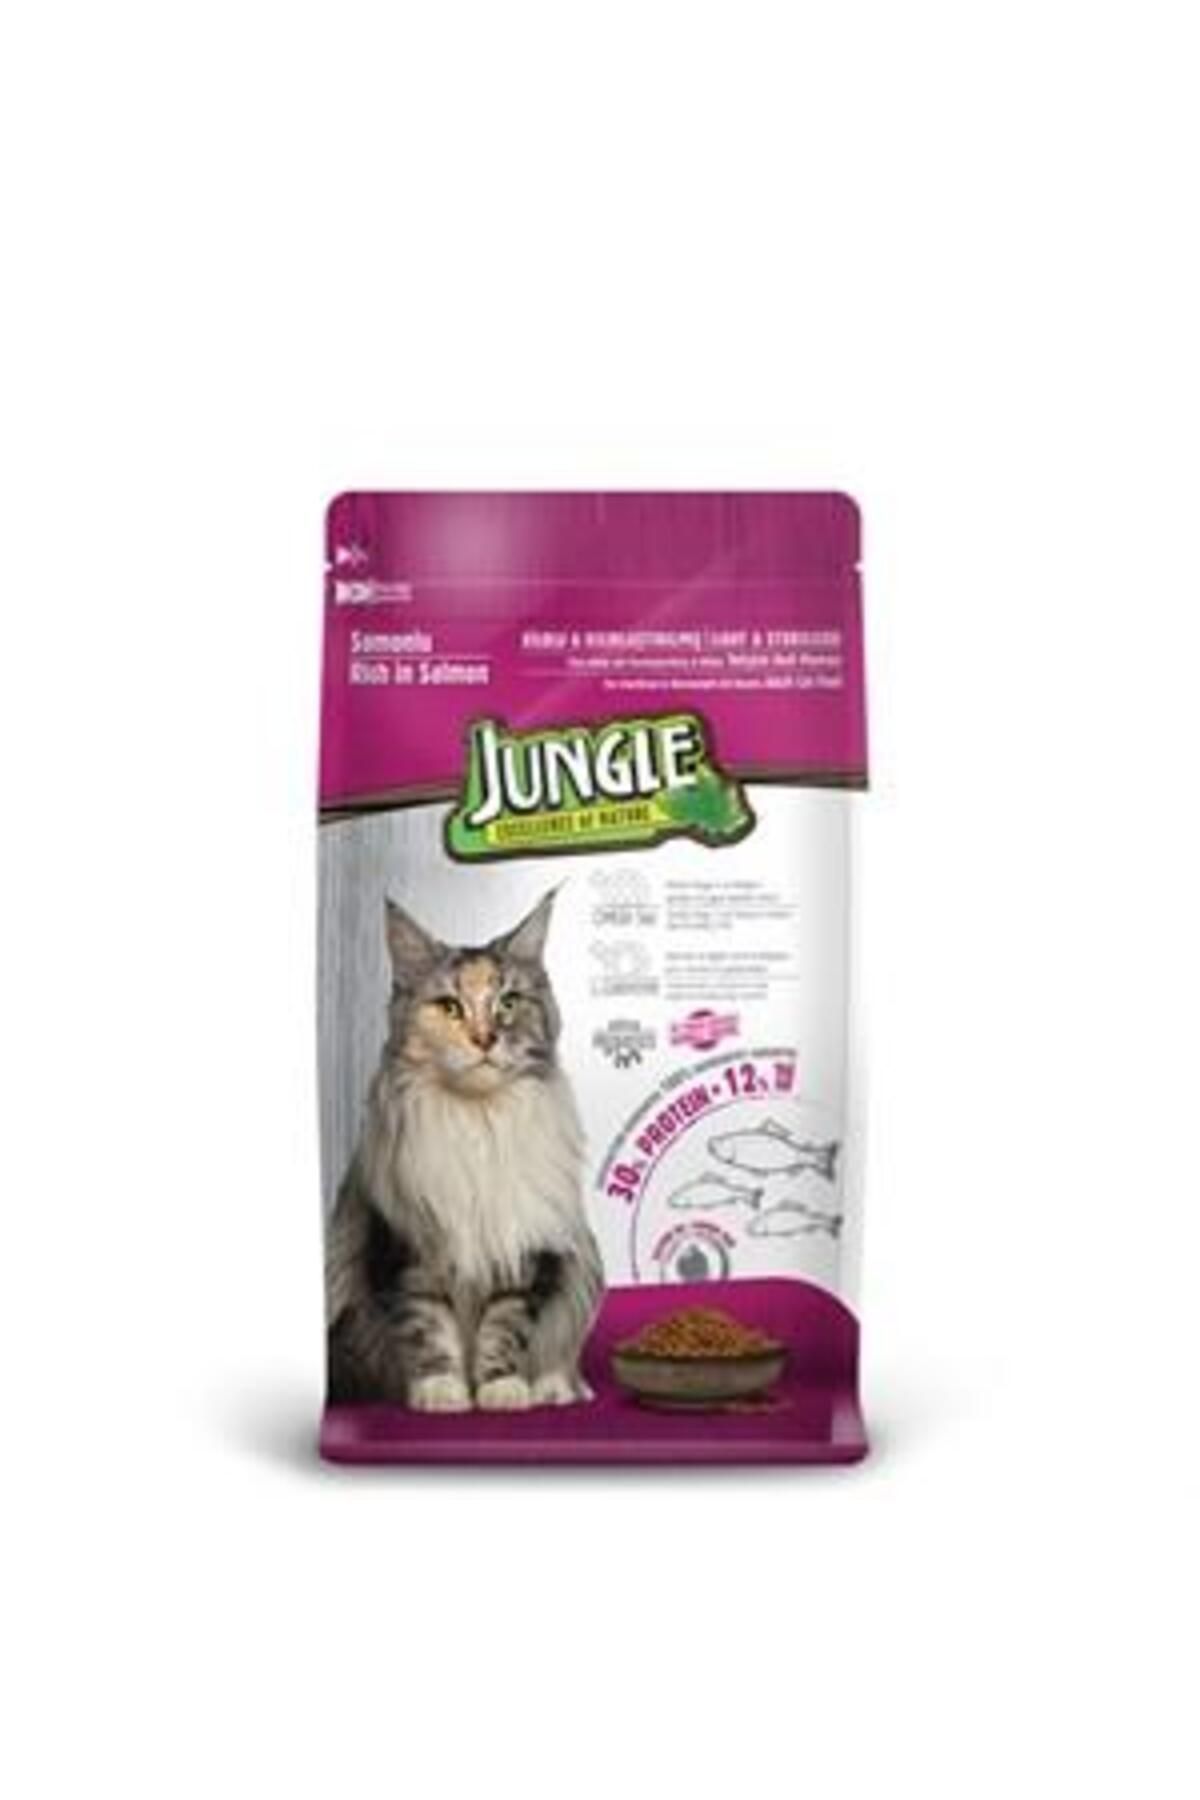 Jungle Somonlu Sterilesed Kısırlaştırılmış Kedi Maması 500 Gr X 8 Adet